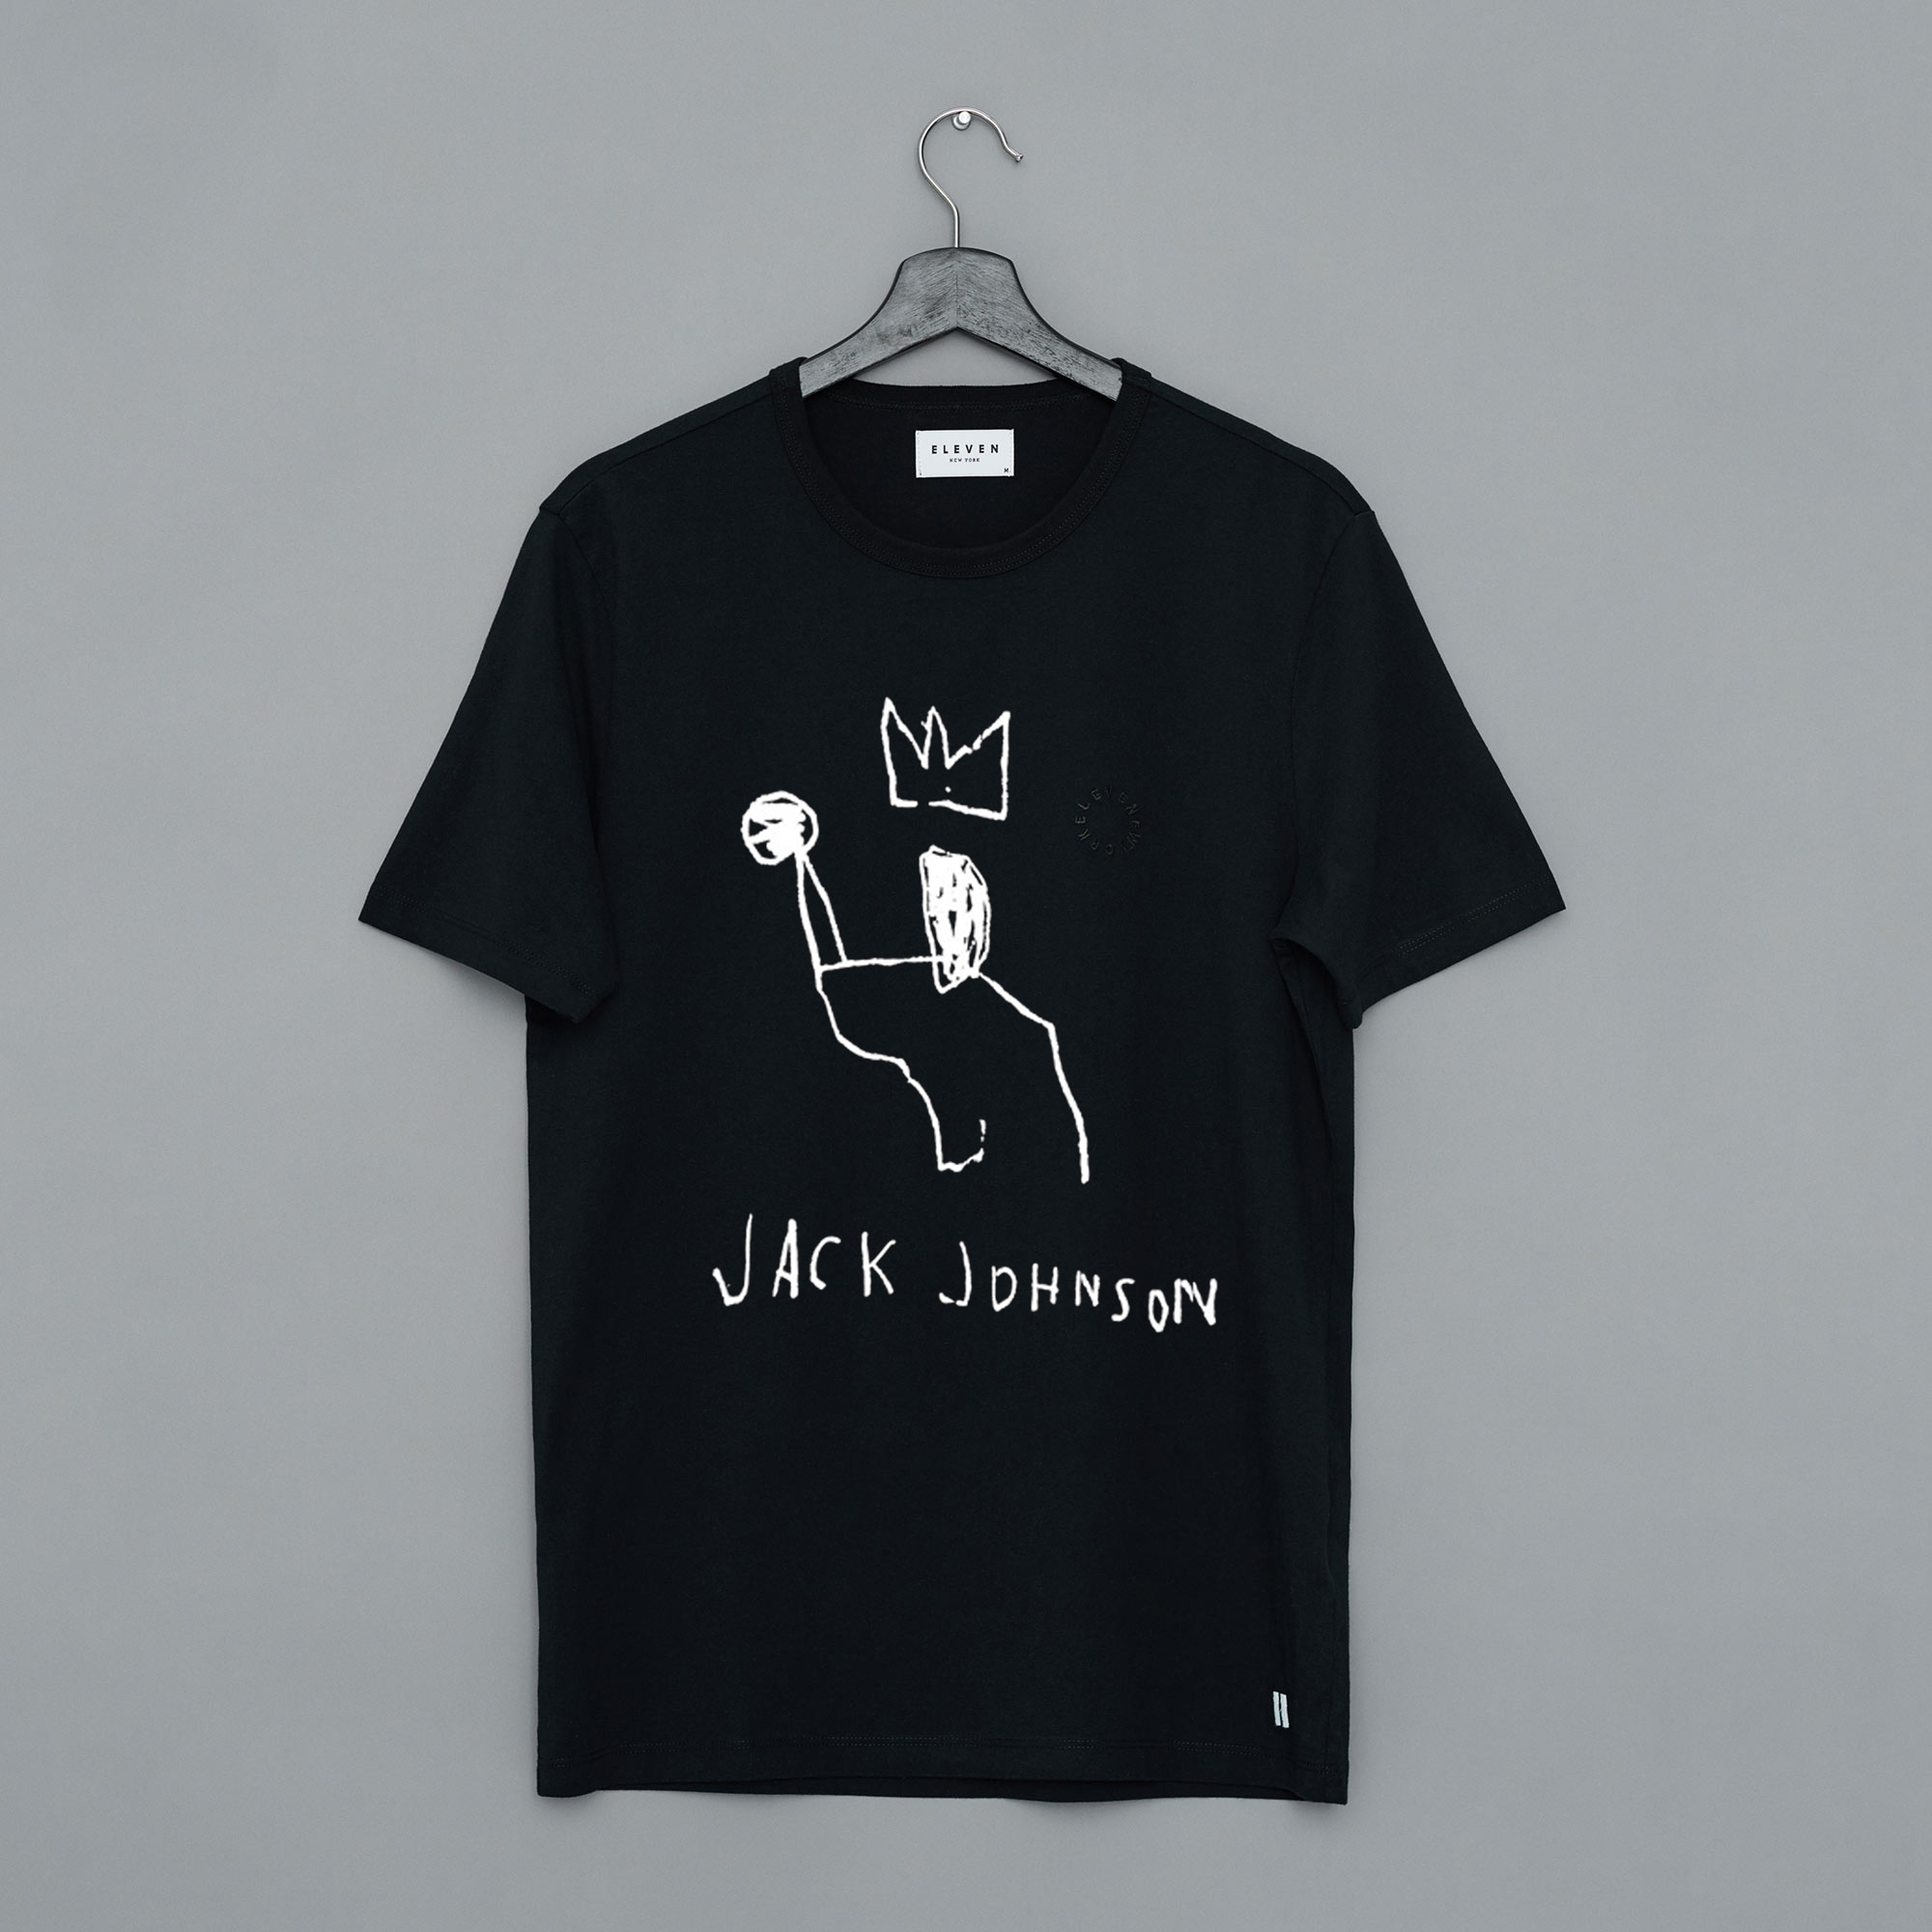 jack johnson shirt